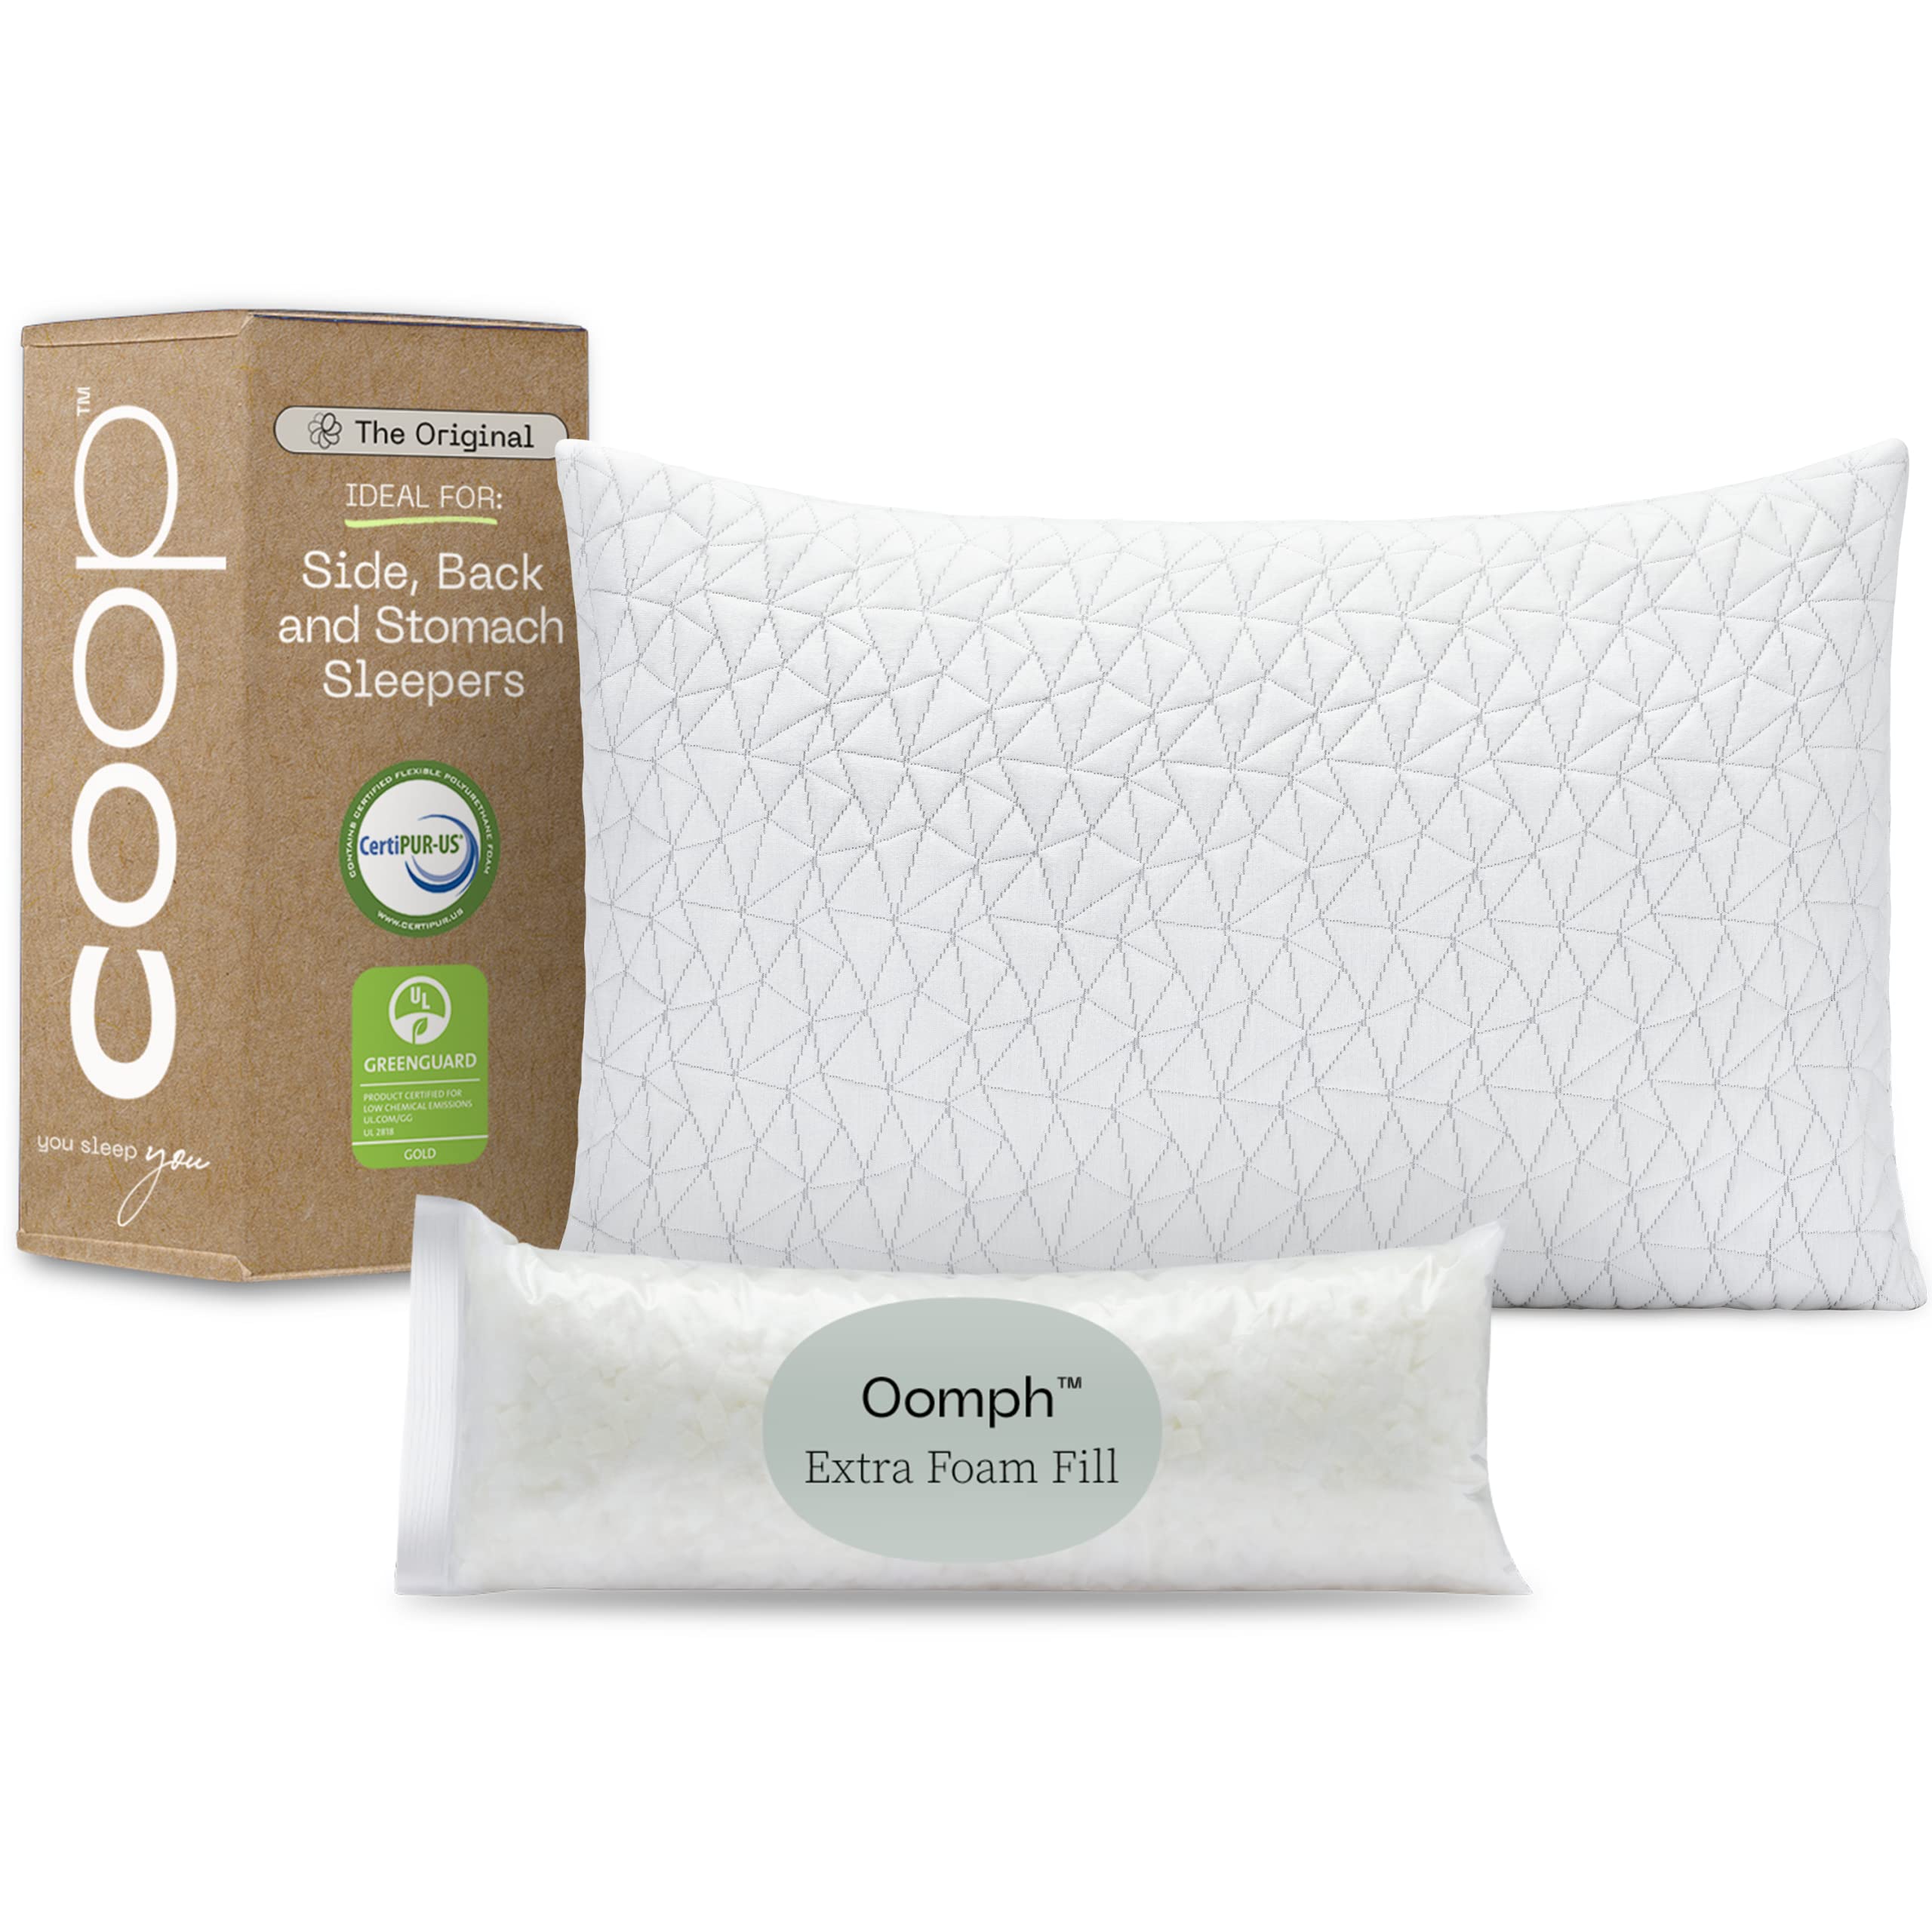  Coop Home Goods وسائد سرير علوية أصلية للنوم - وسائد إسفنجية قابلة للتعديل بشكل متقاطع - وسادة نوم متوسطة الحجم للظهر...